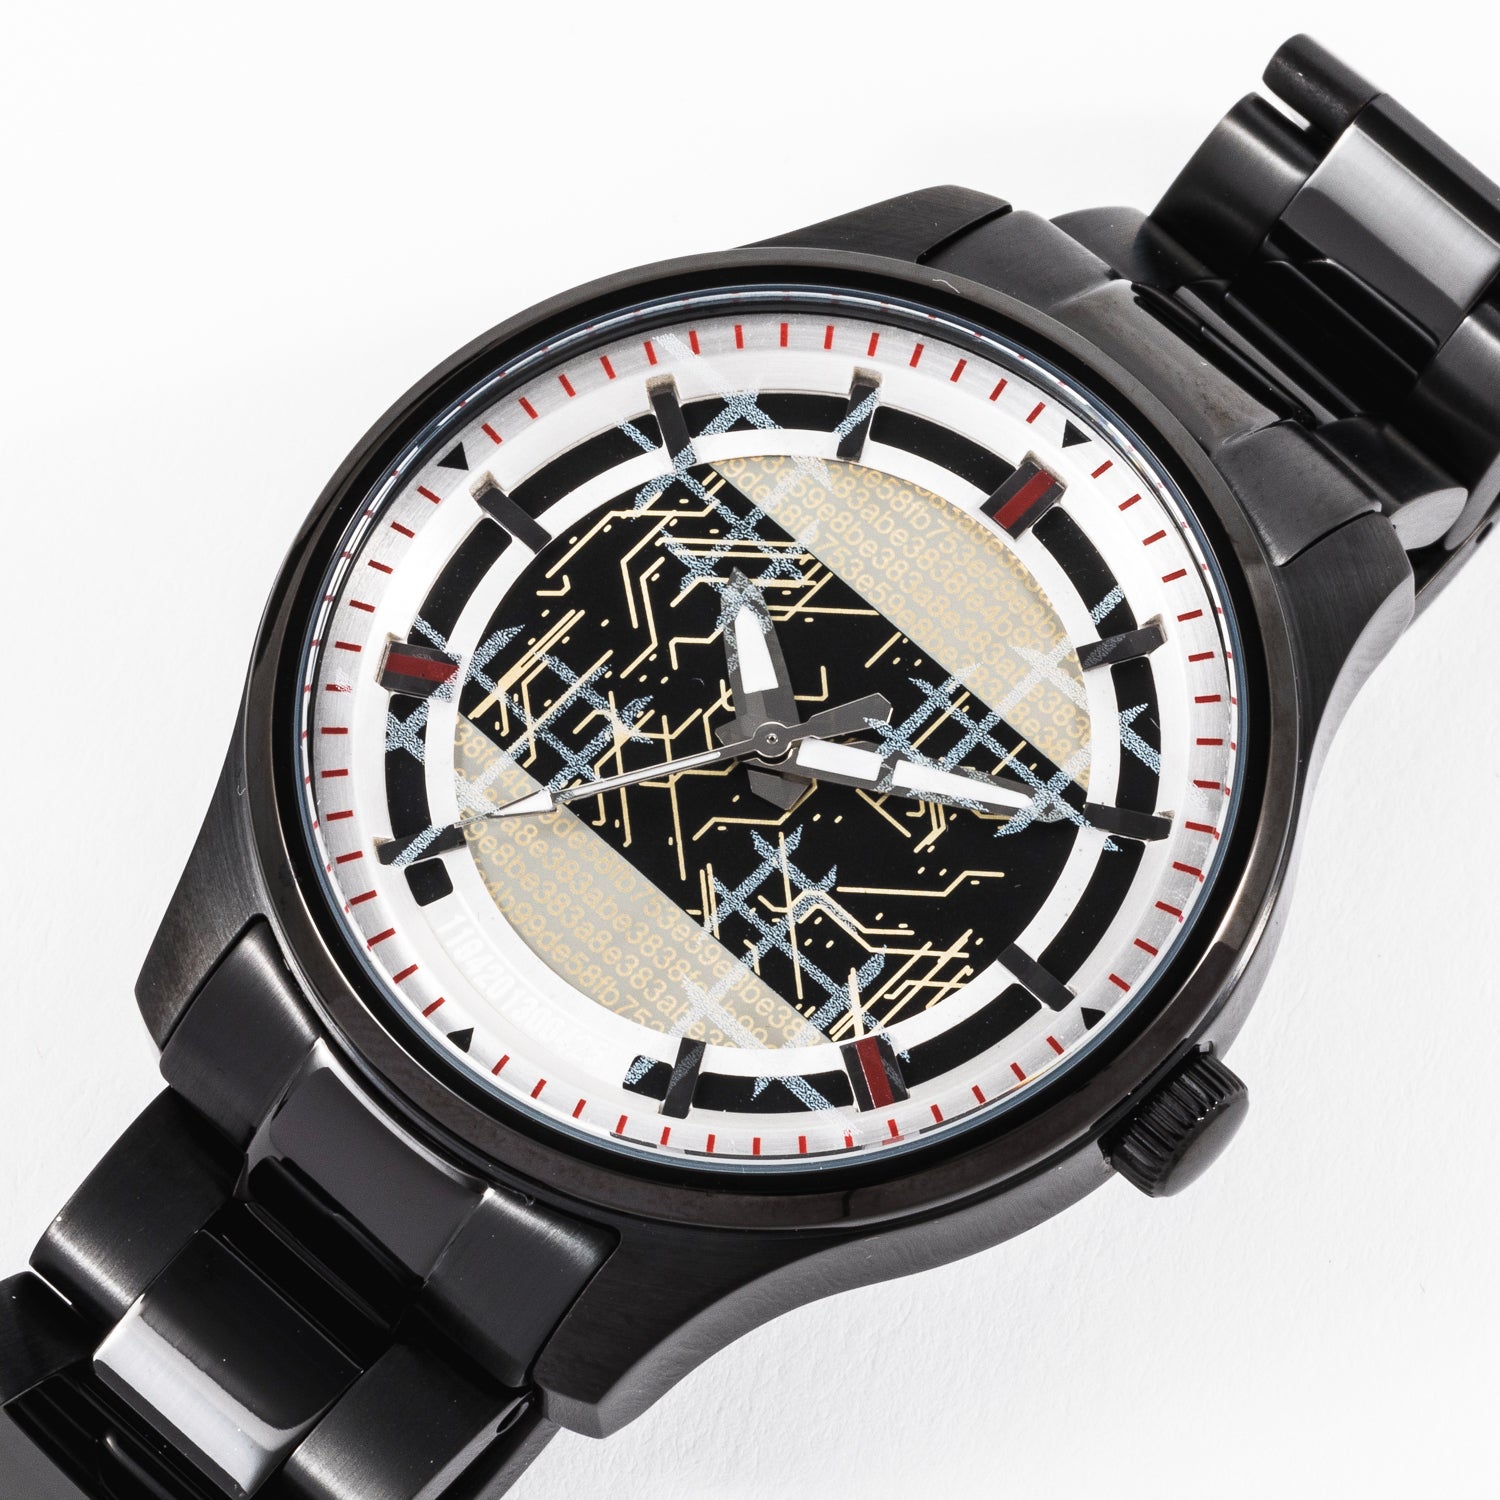 ニーアオートマタ 9Sモデル 腕時計 スーパーグルーピーズ